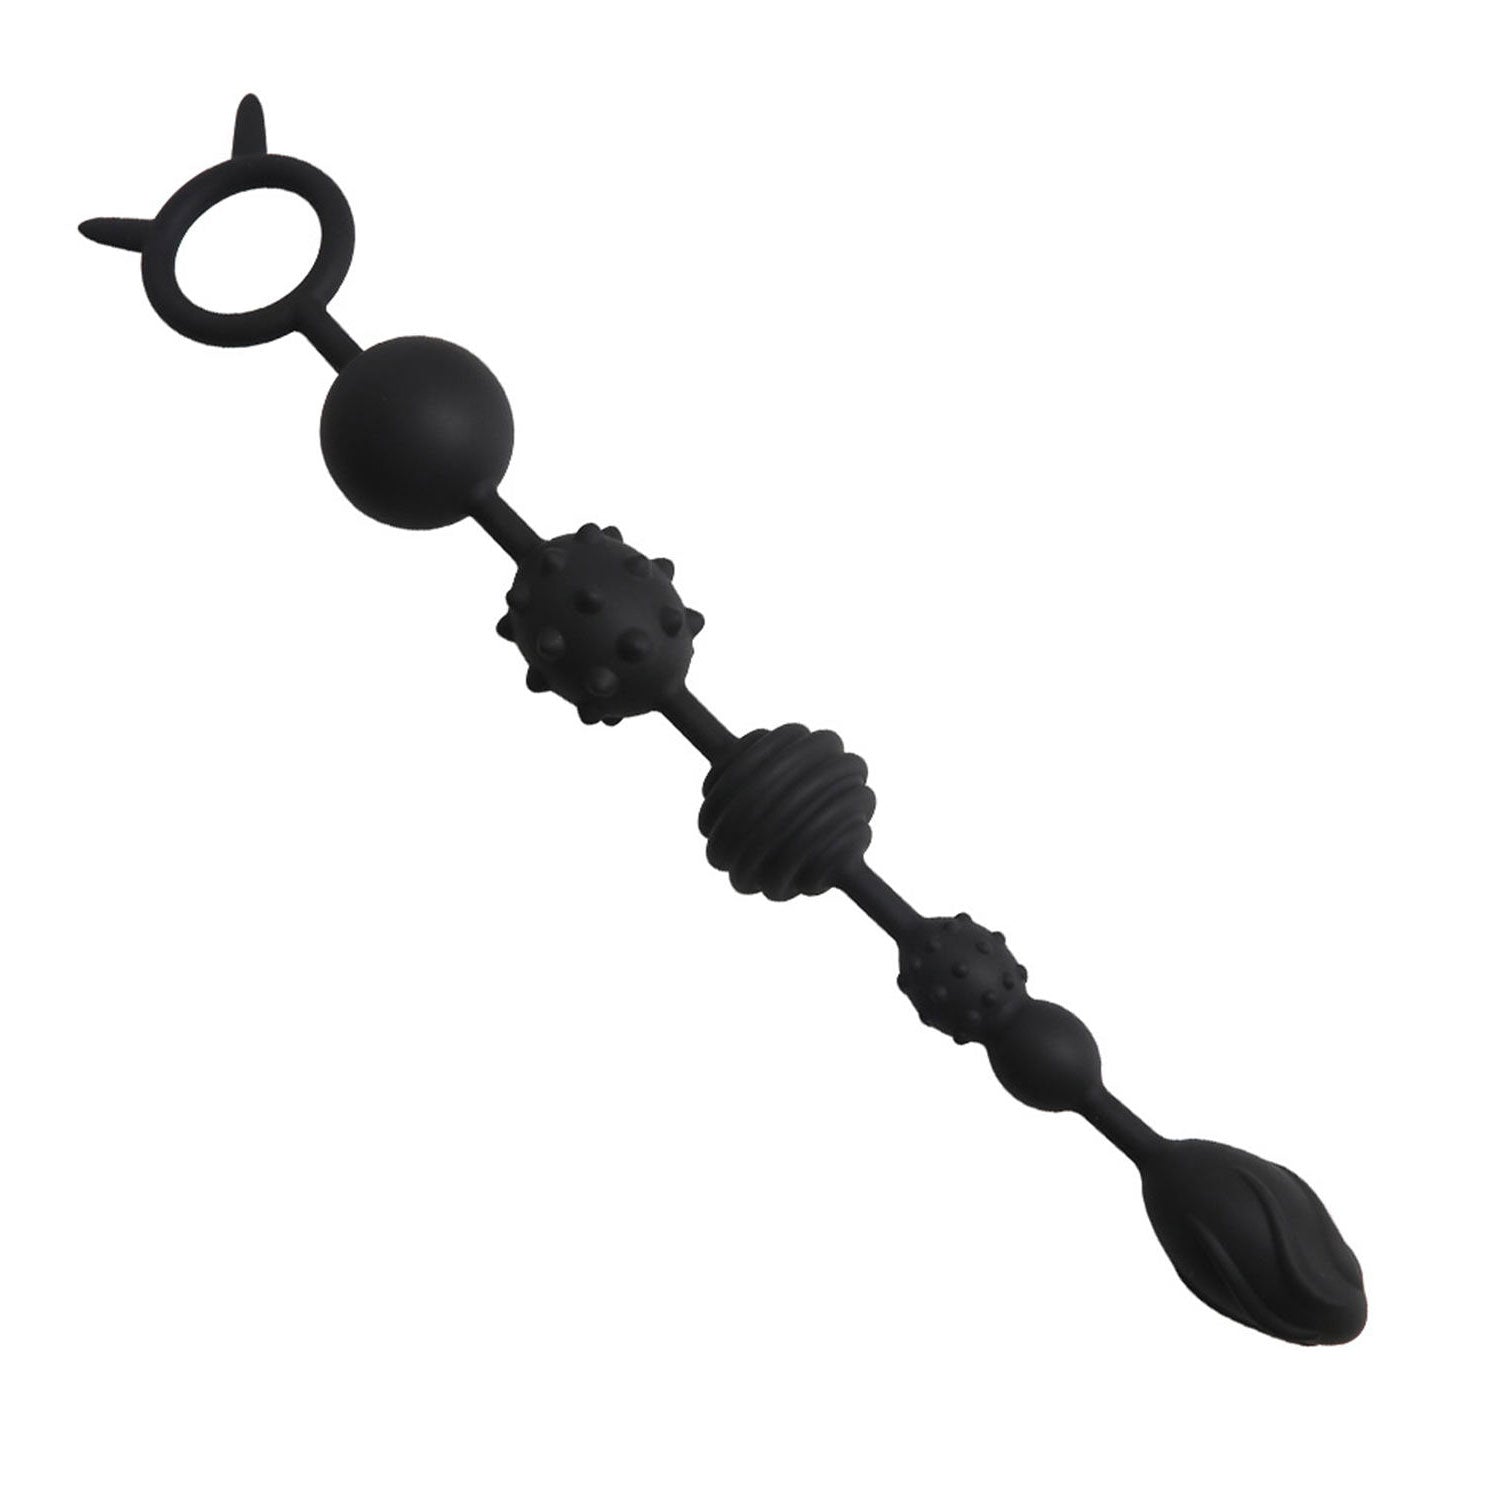 Plug anal anal longue perle anale avec chaîne anale surélevée à pointes